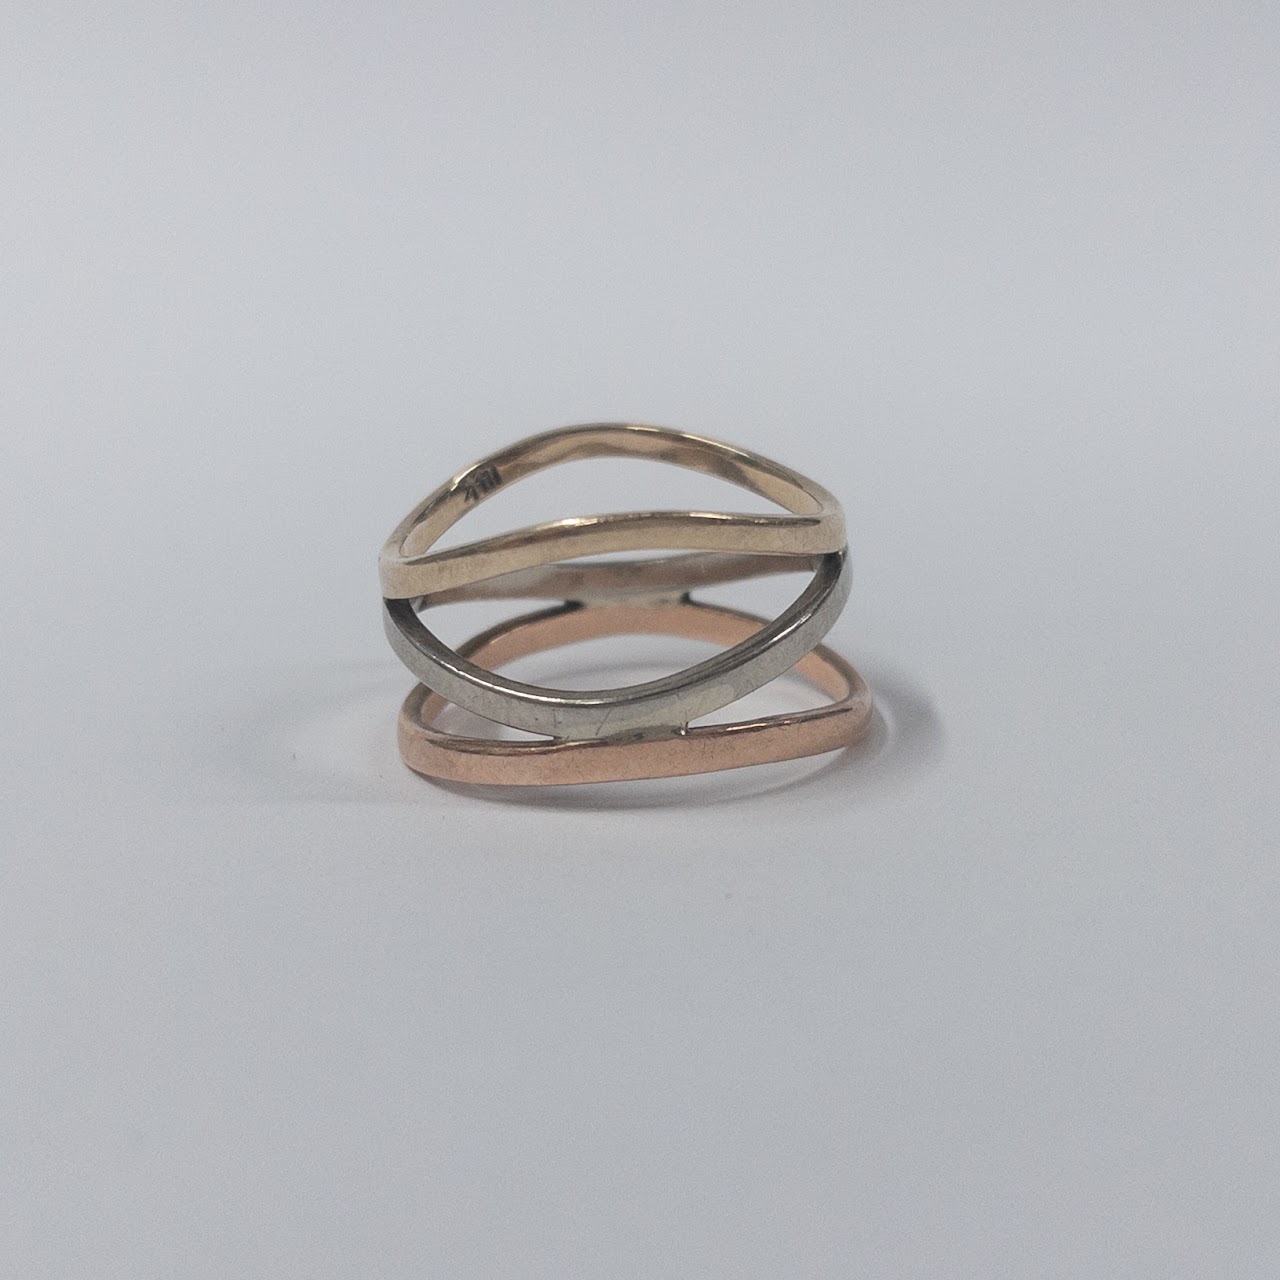 14K Gold Tri-Color Ring